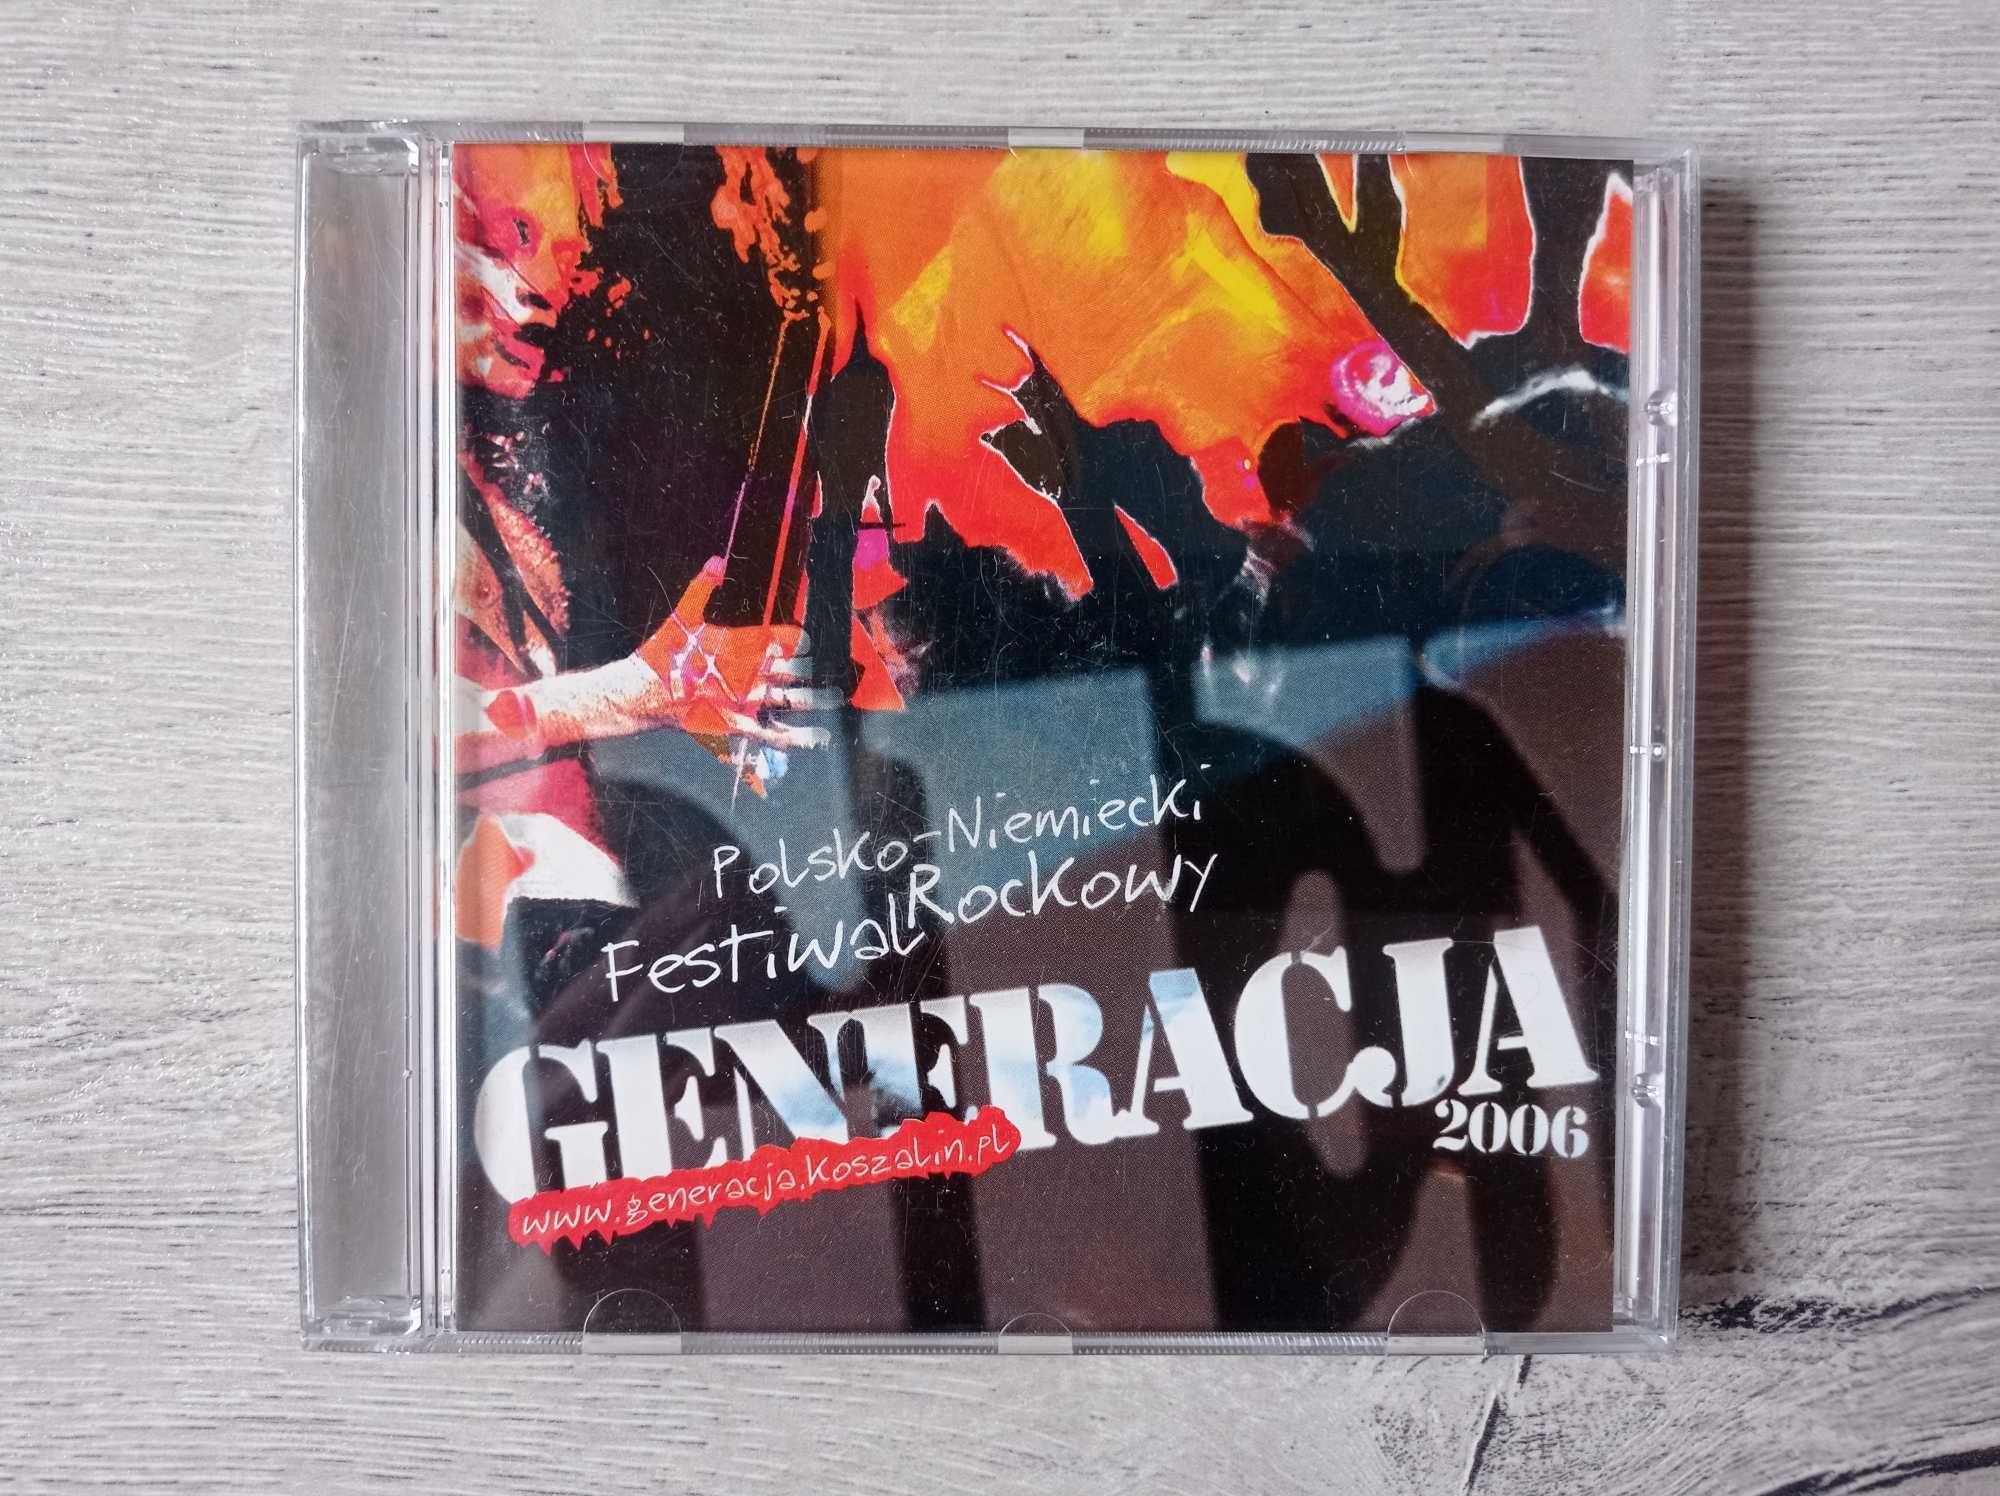 Polsko – Niemiecki Festiwal Rockowy Generacja 2006 - cd - wyprzedaż ko